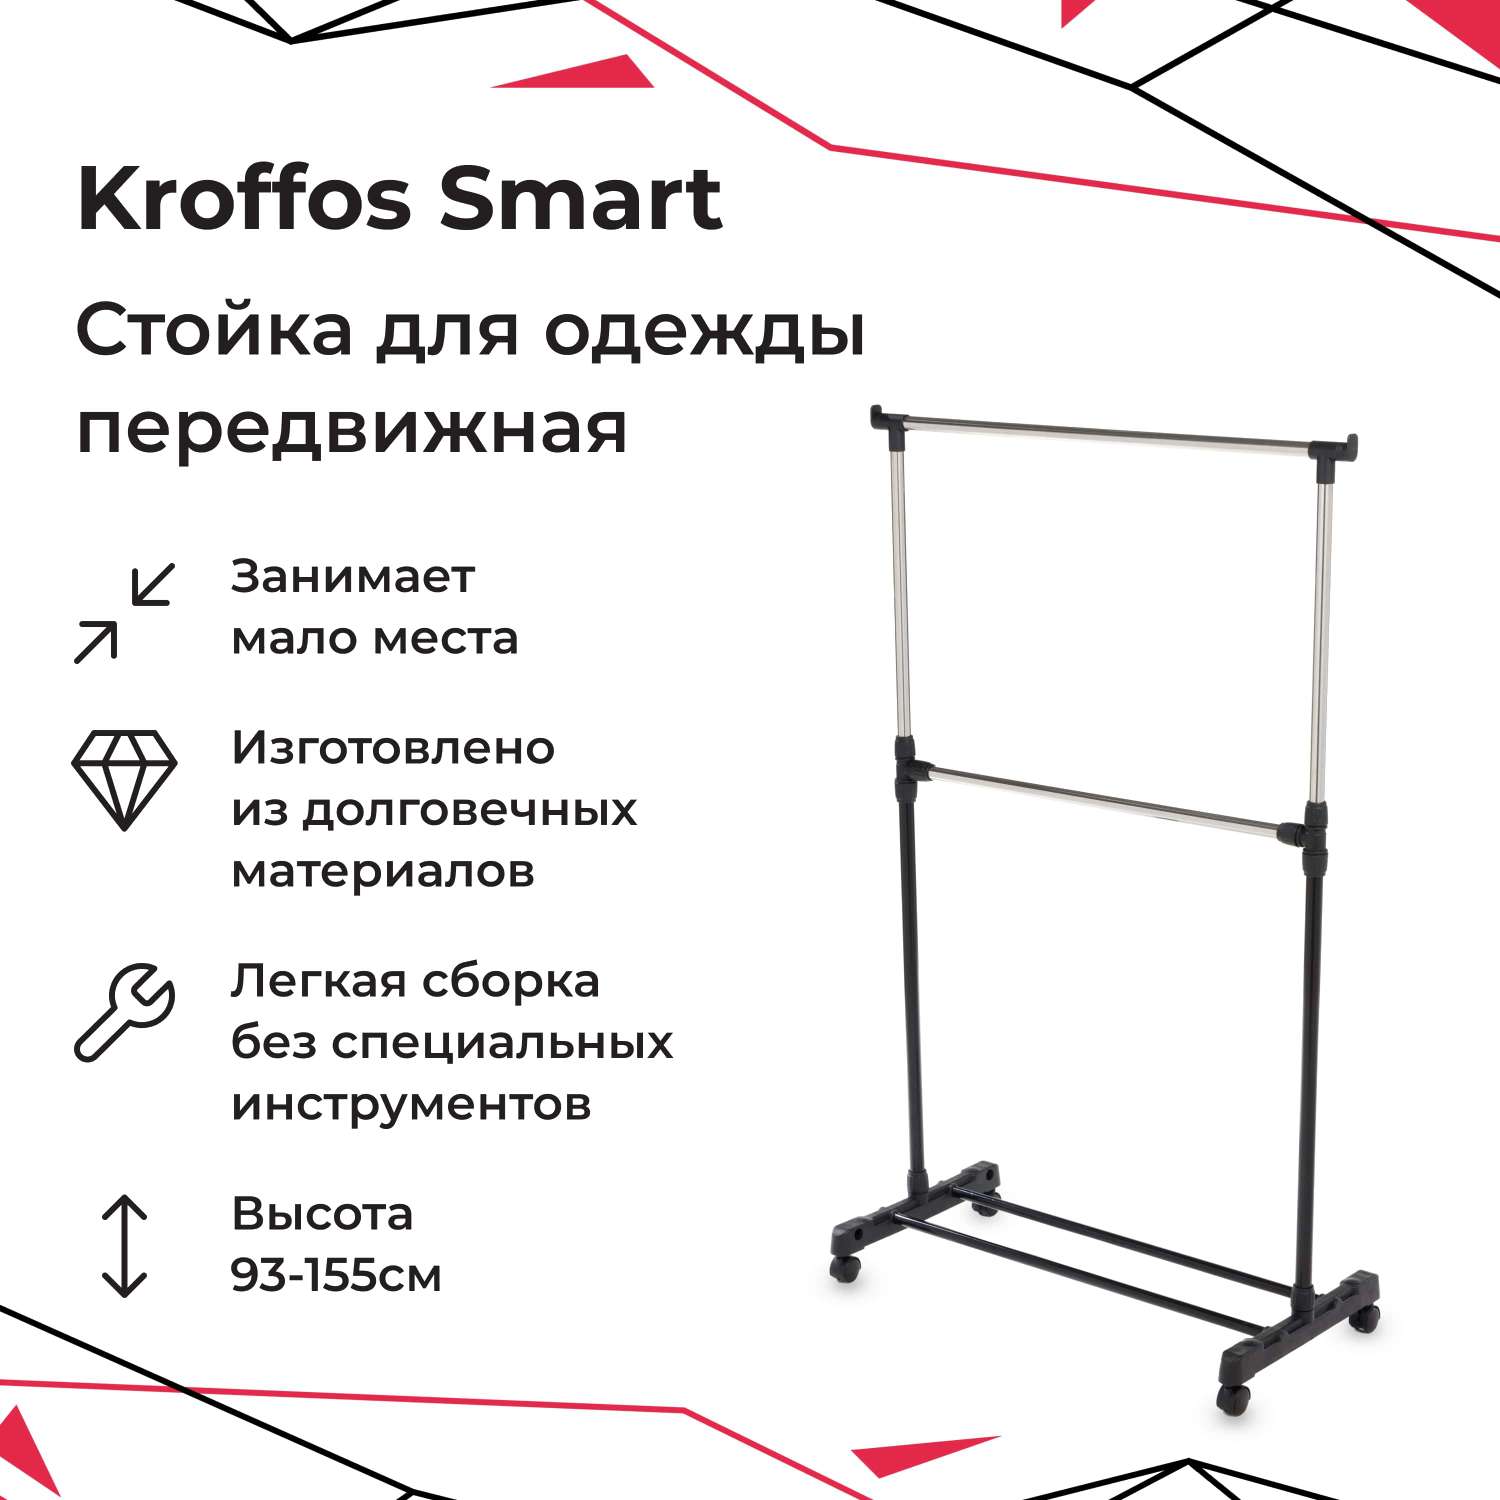 Стойка для одежды KROFFOS Smart передвижная одиночная - фото 1